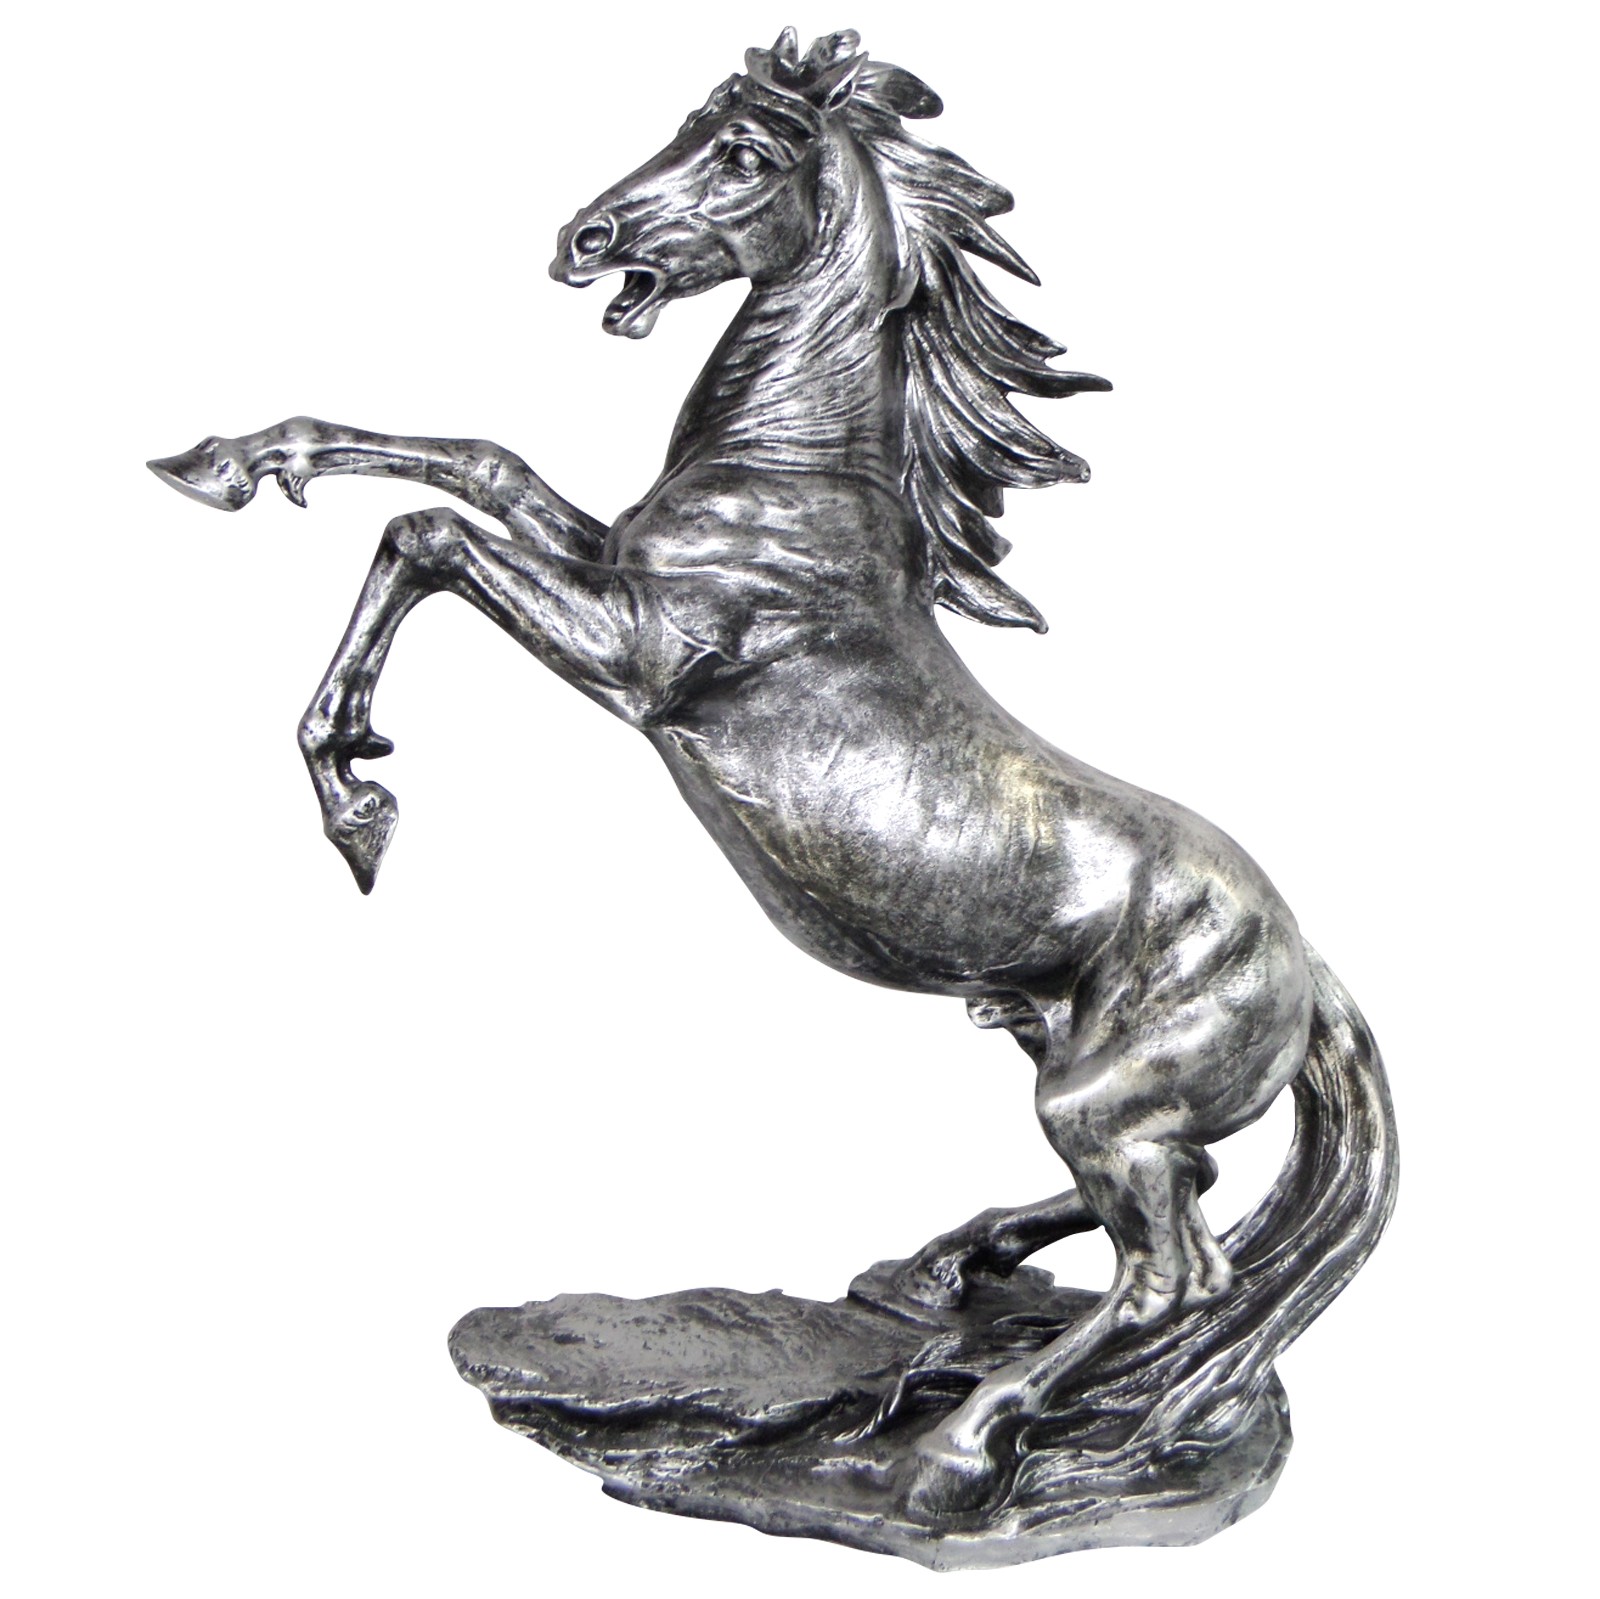 Sculpture design cheval fille polyrésine figure blanc argent